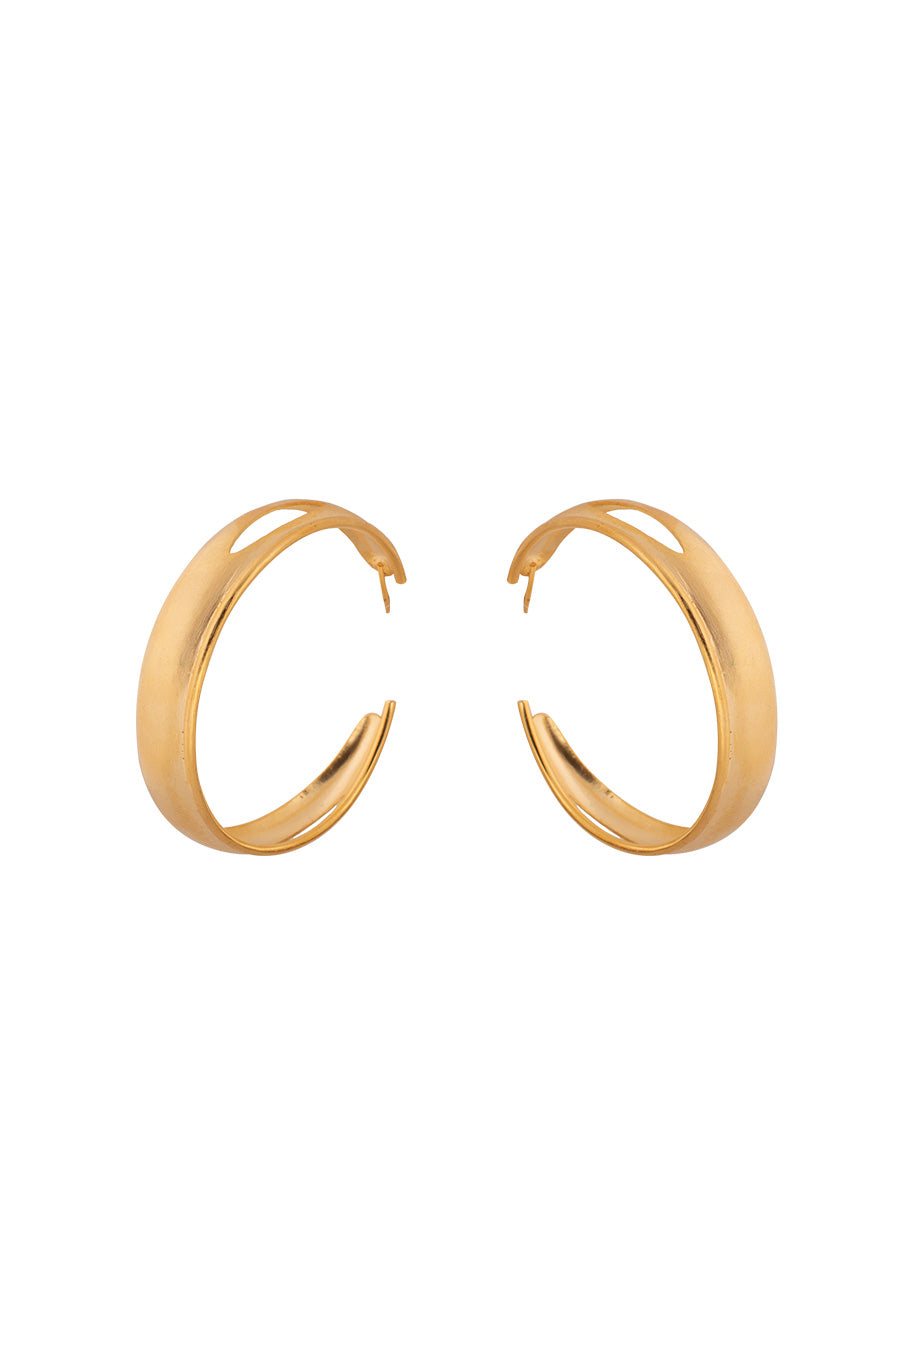 Gold Plated Peak-A-Boo Hoop Earrings